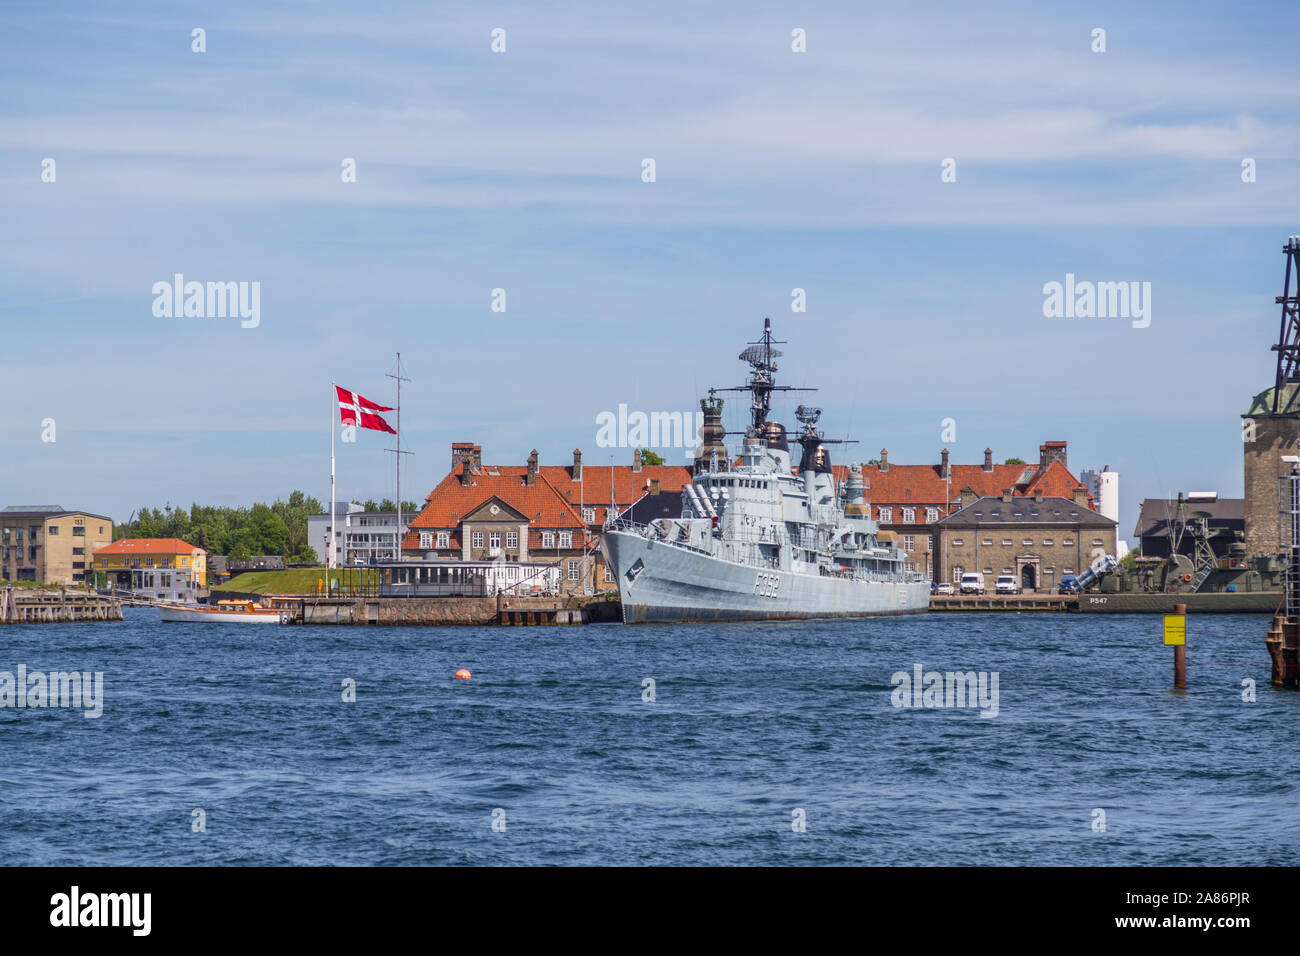 COPENHAGEN, Danimarca - 25 Maggio 2017: barche ed edifici lungo il lungomare di Copenaghen durante il giorno. Una corazzata e fabbriche può essere visto. Foto Stock